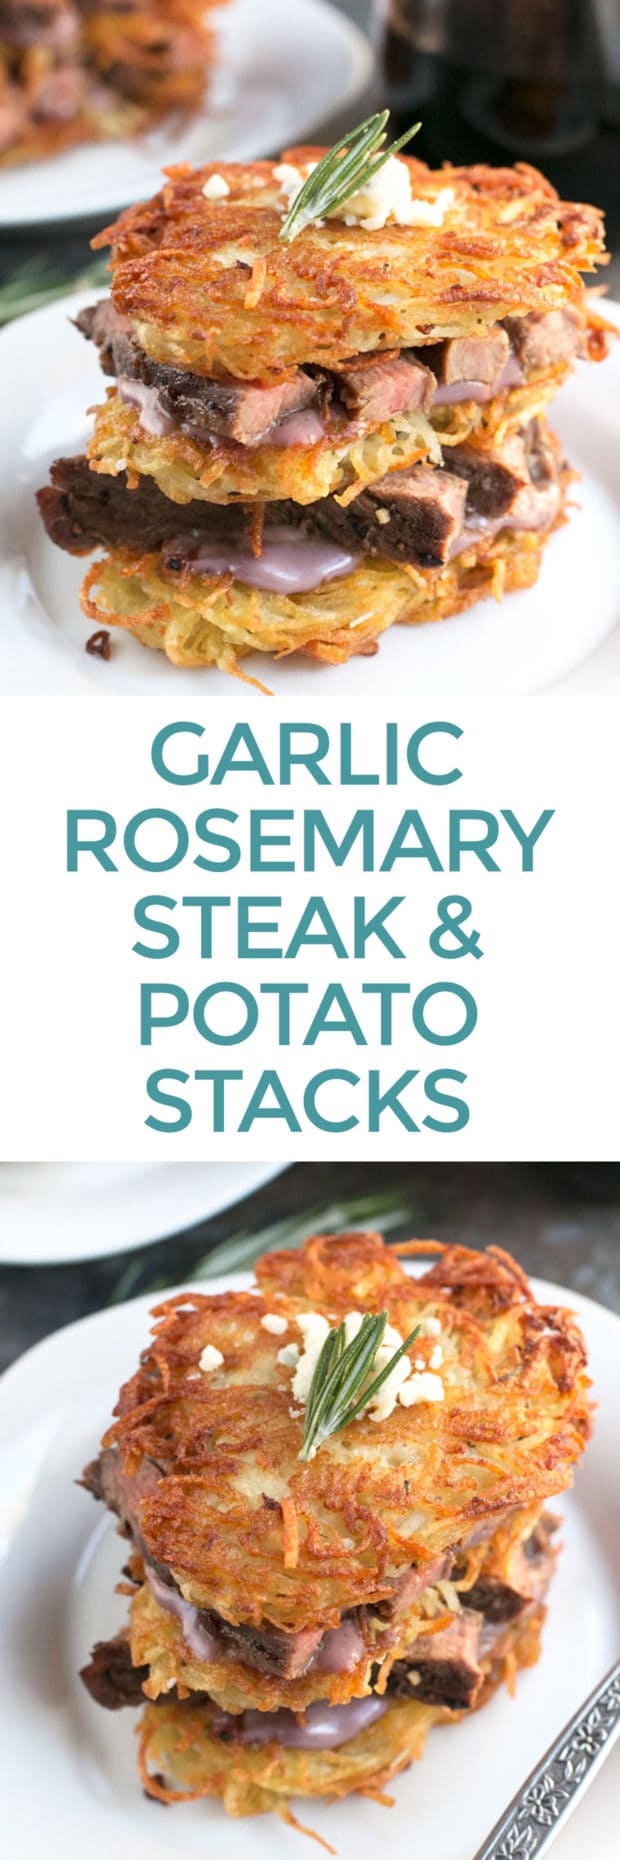 Garlic Rosemary Steak & Potato Stacks with Red Wine Blue Cheese Sauce | cakenknife.com